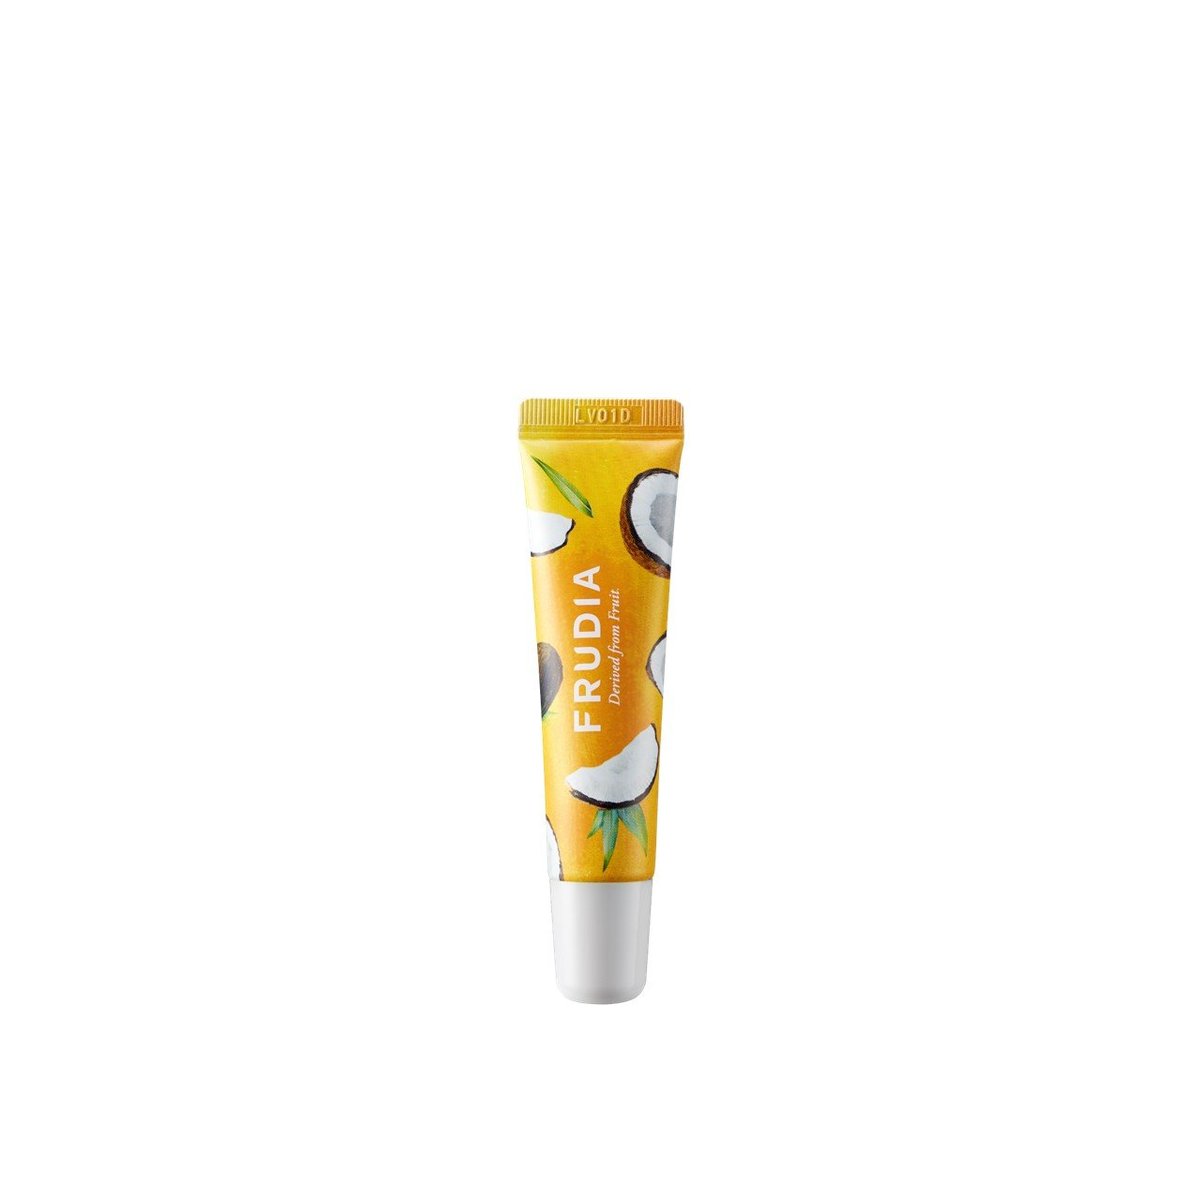 Frudia - Coconut Honey Salve Lip Cream 10g